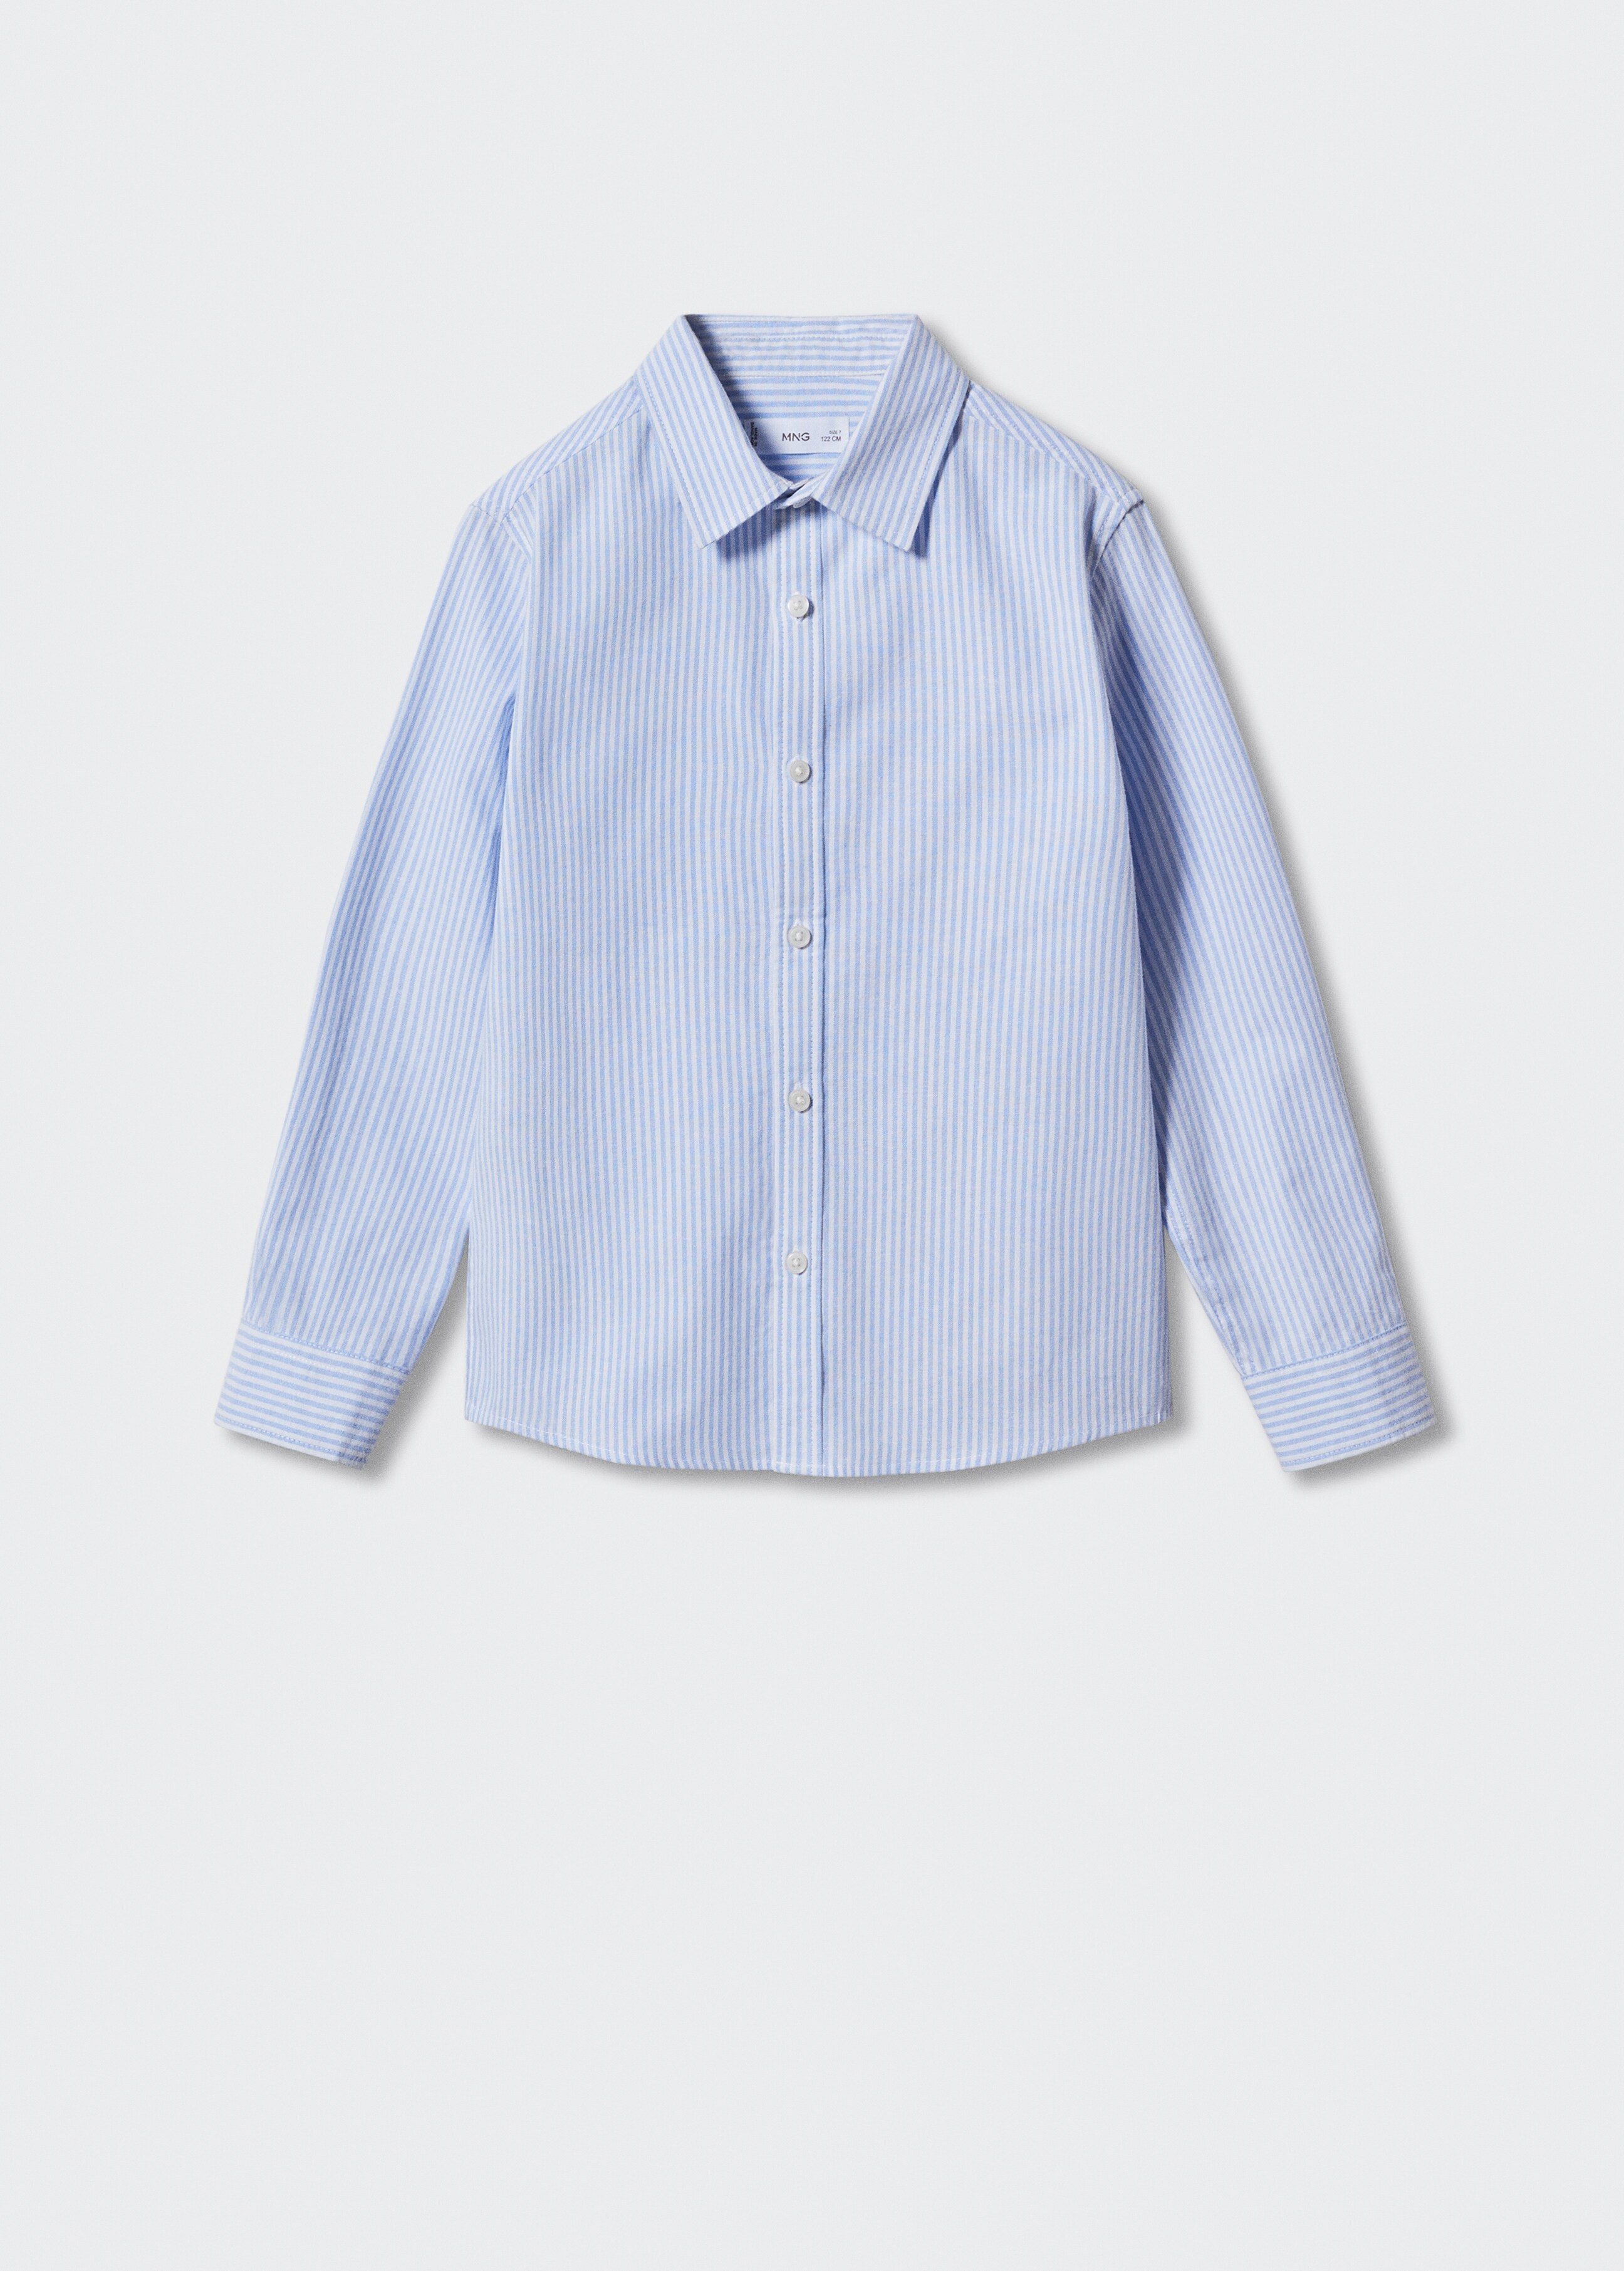 Camisa Oxford rayas - Artículo sin modelo